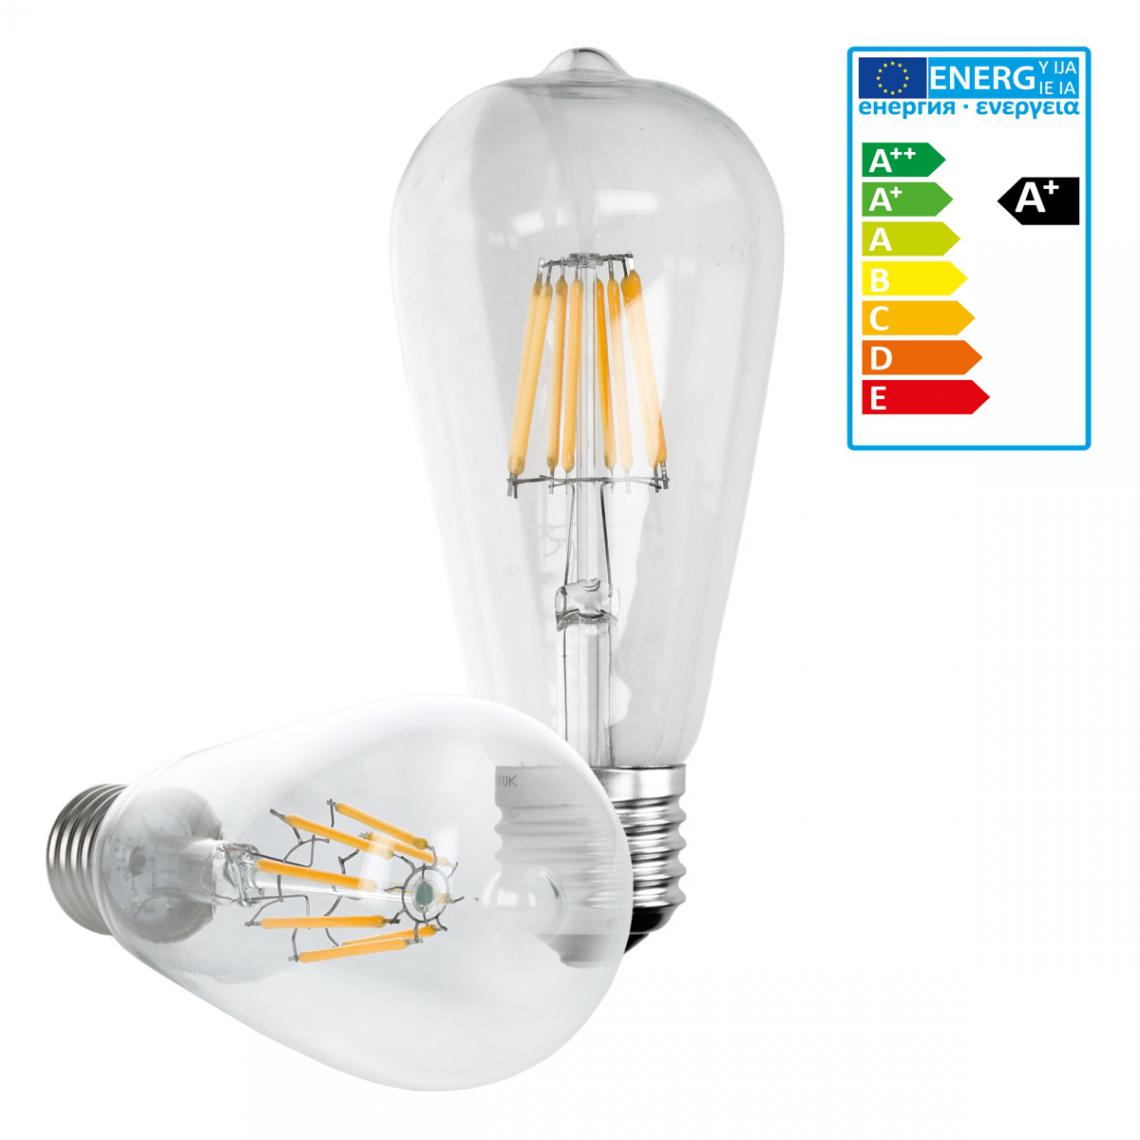 Ecd Germany - ECD Germany 1 x LED Filament de l'ampoule E27 classique Edison 8W 816 lumens angle de faisceau 120 ° AC 220-240 reste caché et remplace environ 45W lampe incandescente blanc chaud - Ampoules LED